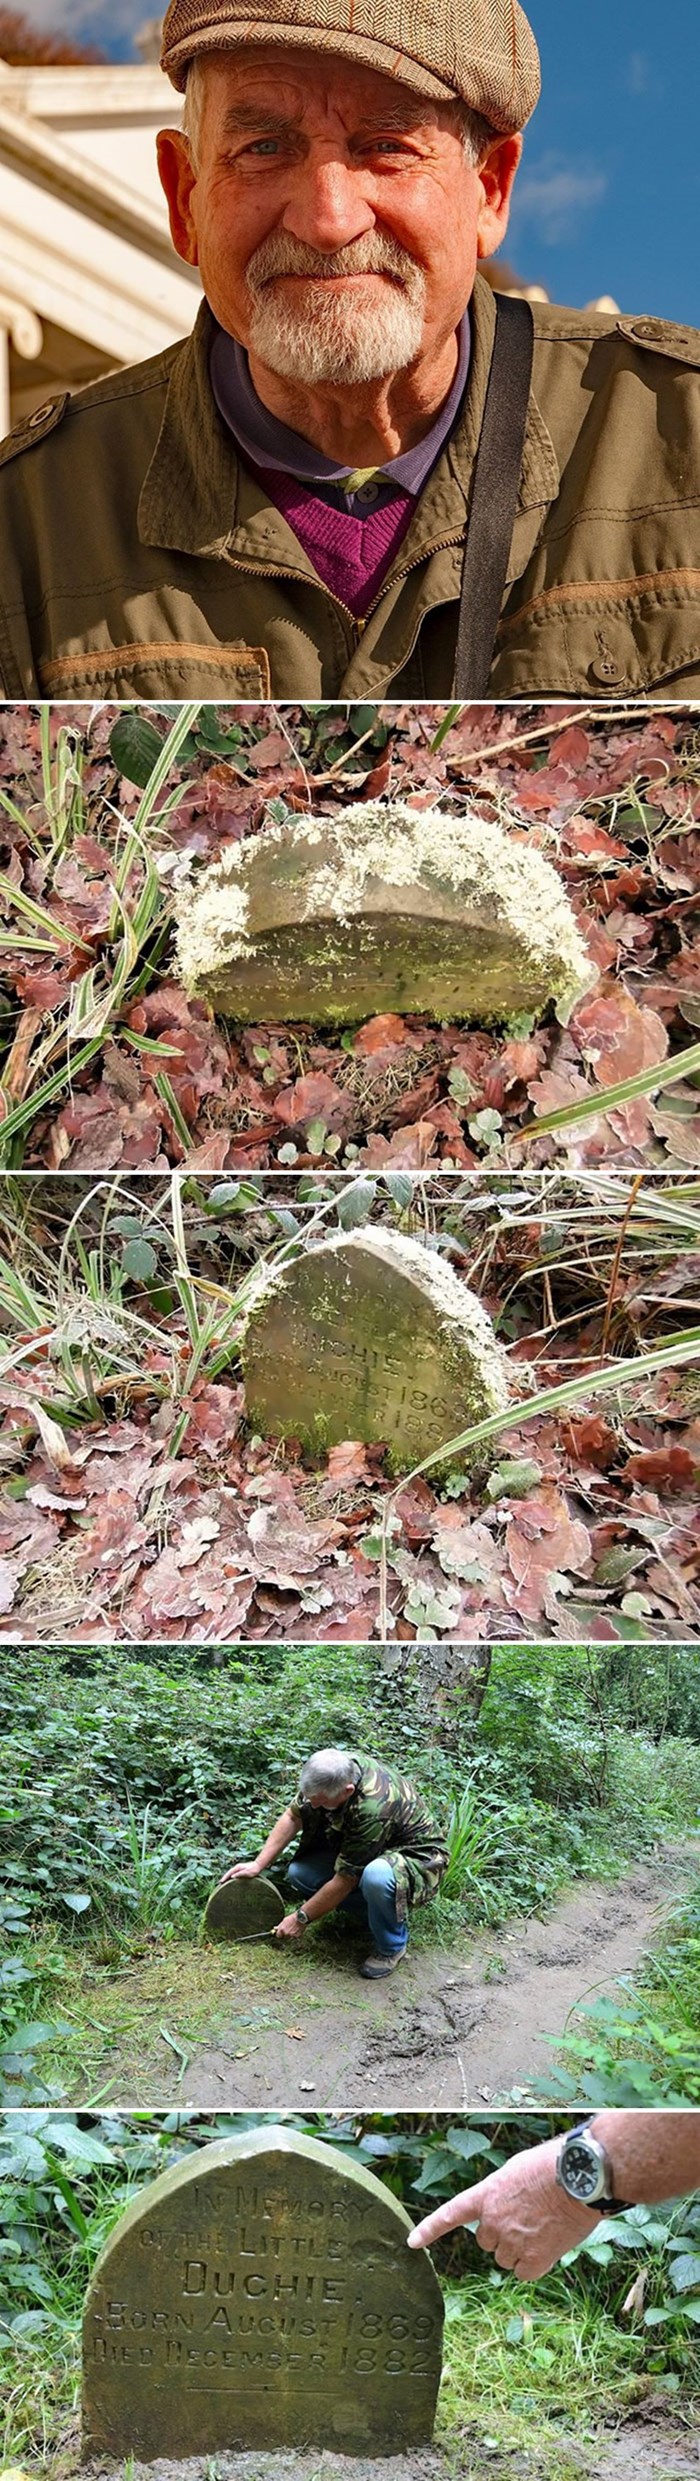 Umirovljenik je u šumi pronašao nadgrobni spomenik, kad ga je očistio otkrio je zanimljivu priču